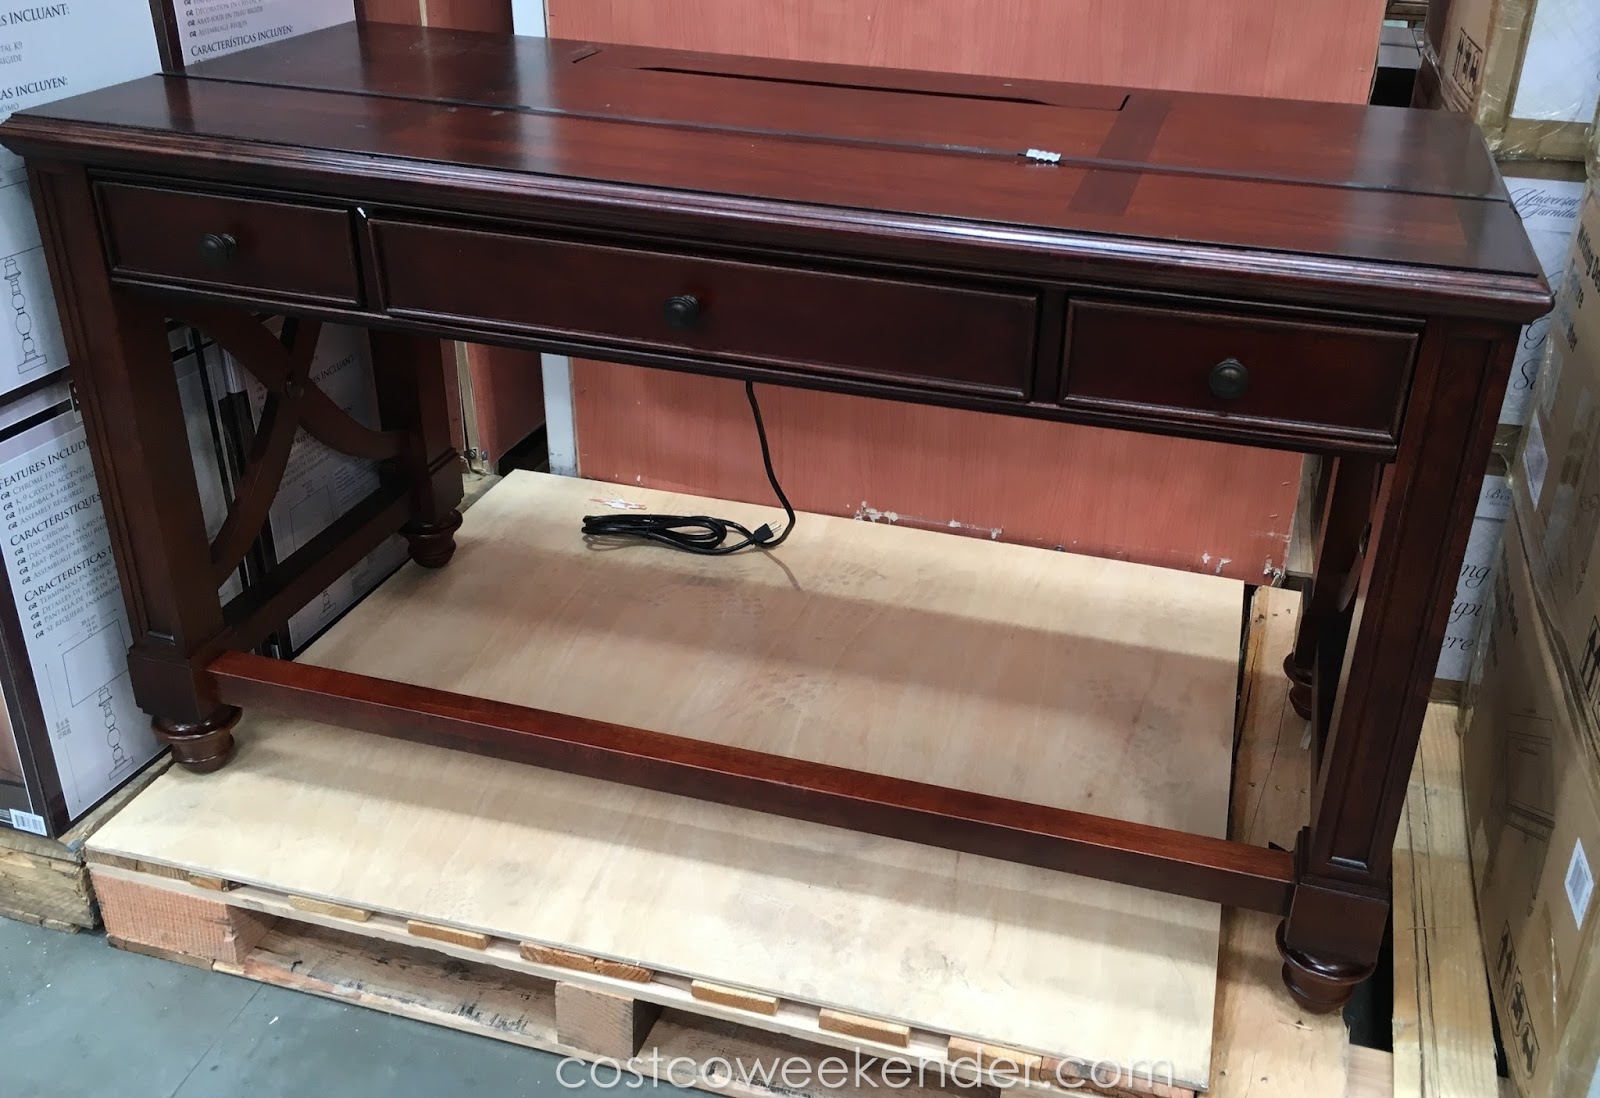 Universal Furniture Broadmoore Writing Desk Costco Weekender